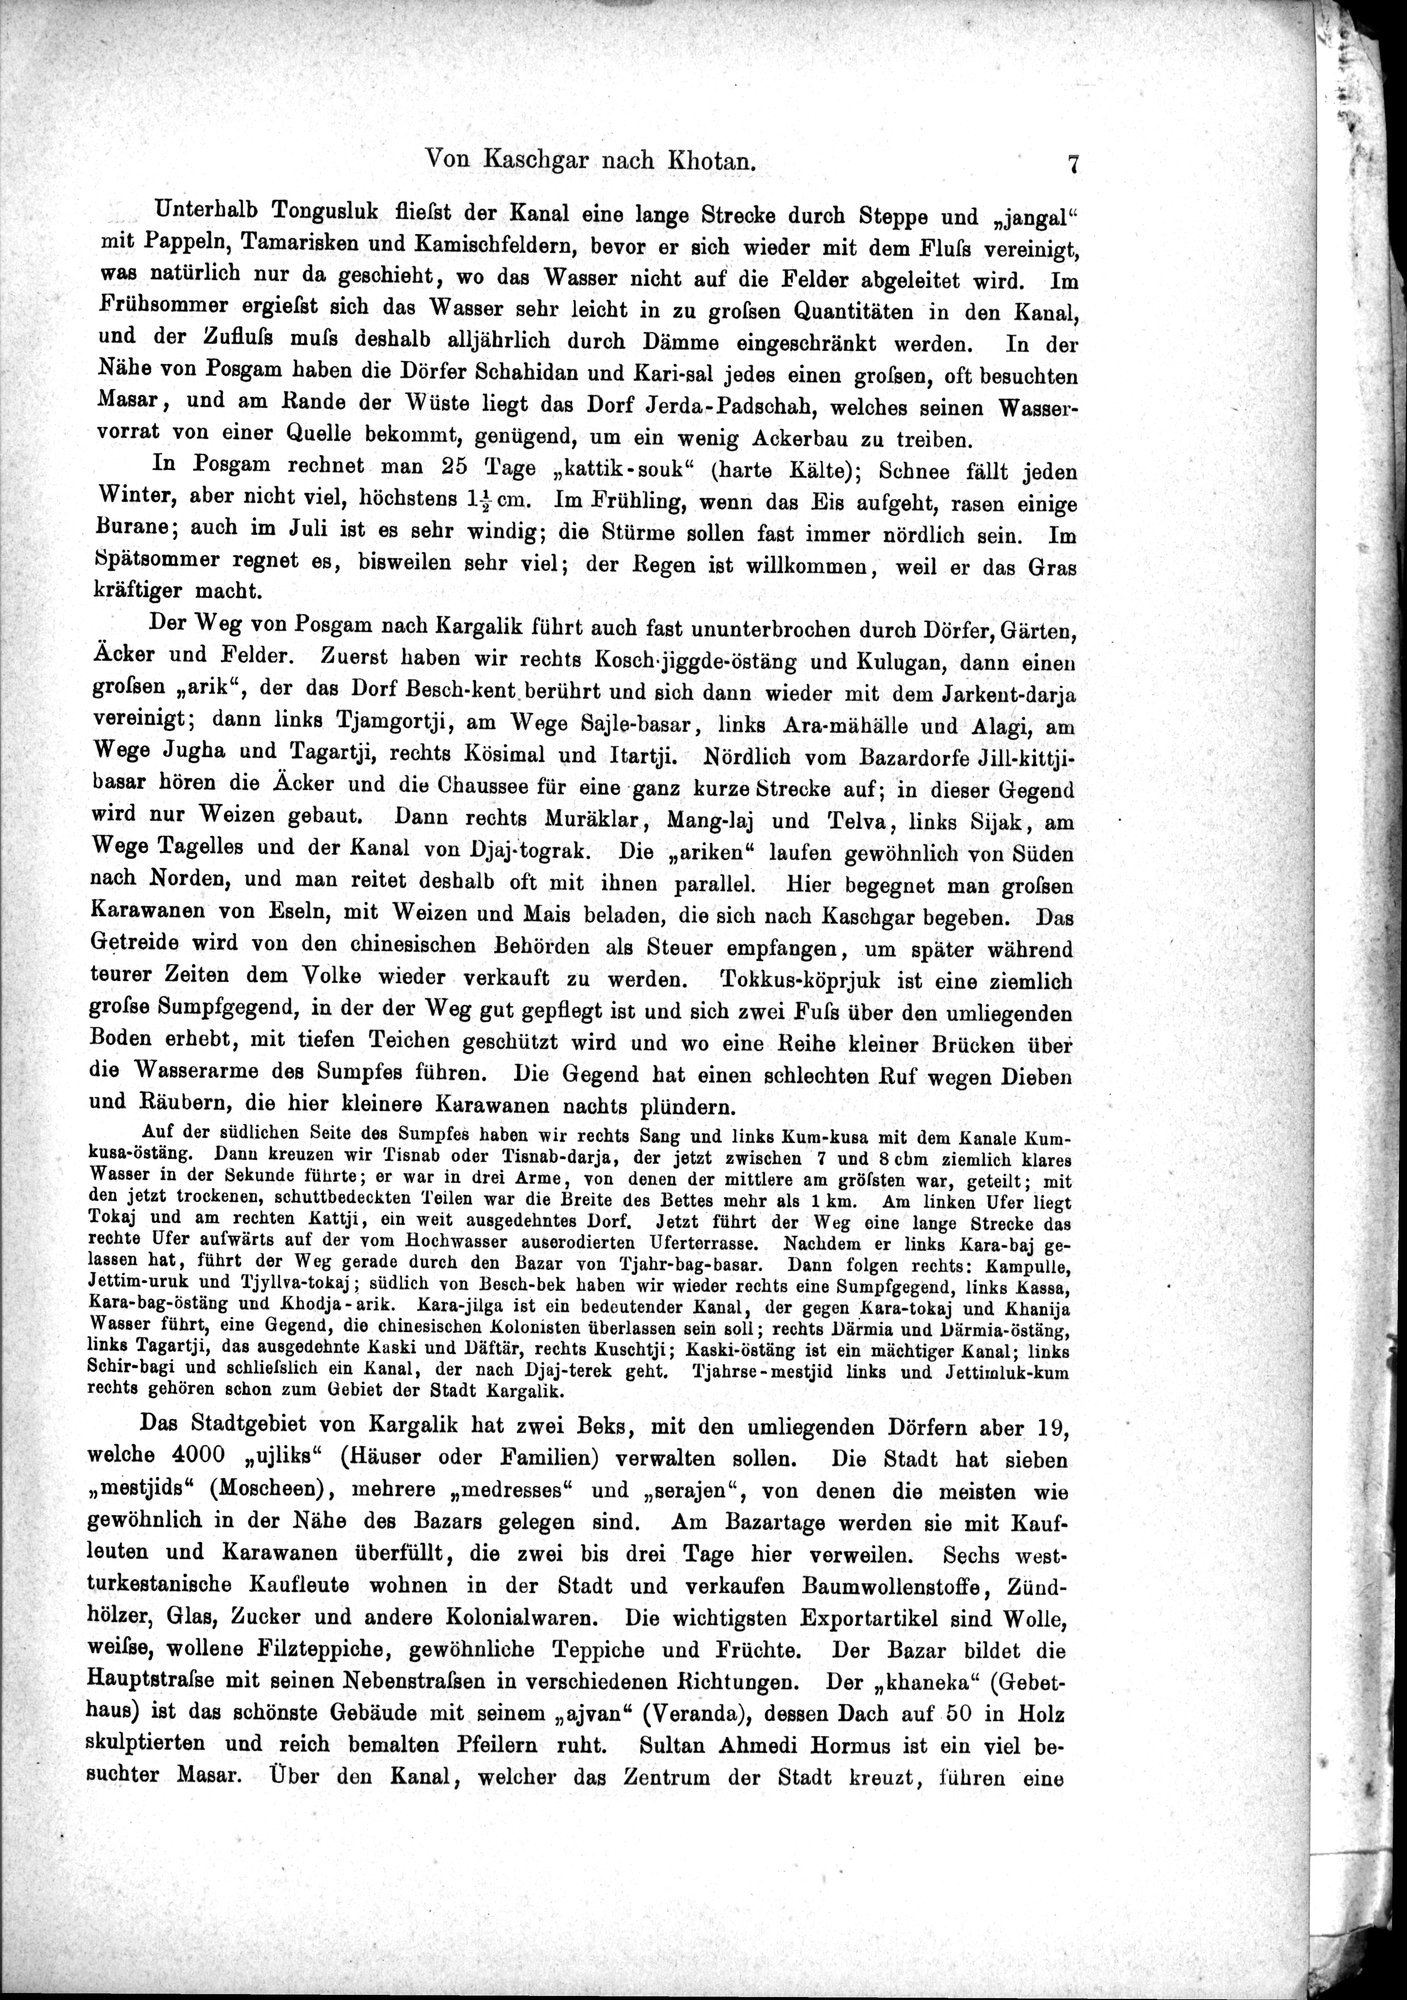 Die Geographische-Wissenschaftlichen Ergebnisse meiner Reisen in Zentralasien, 1894-1897 : vol.1 / Page 19 (Grayscale High Resolution Image)